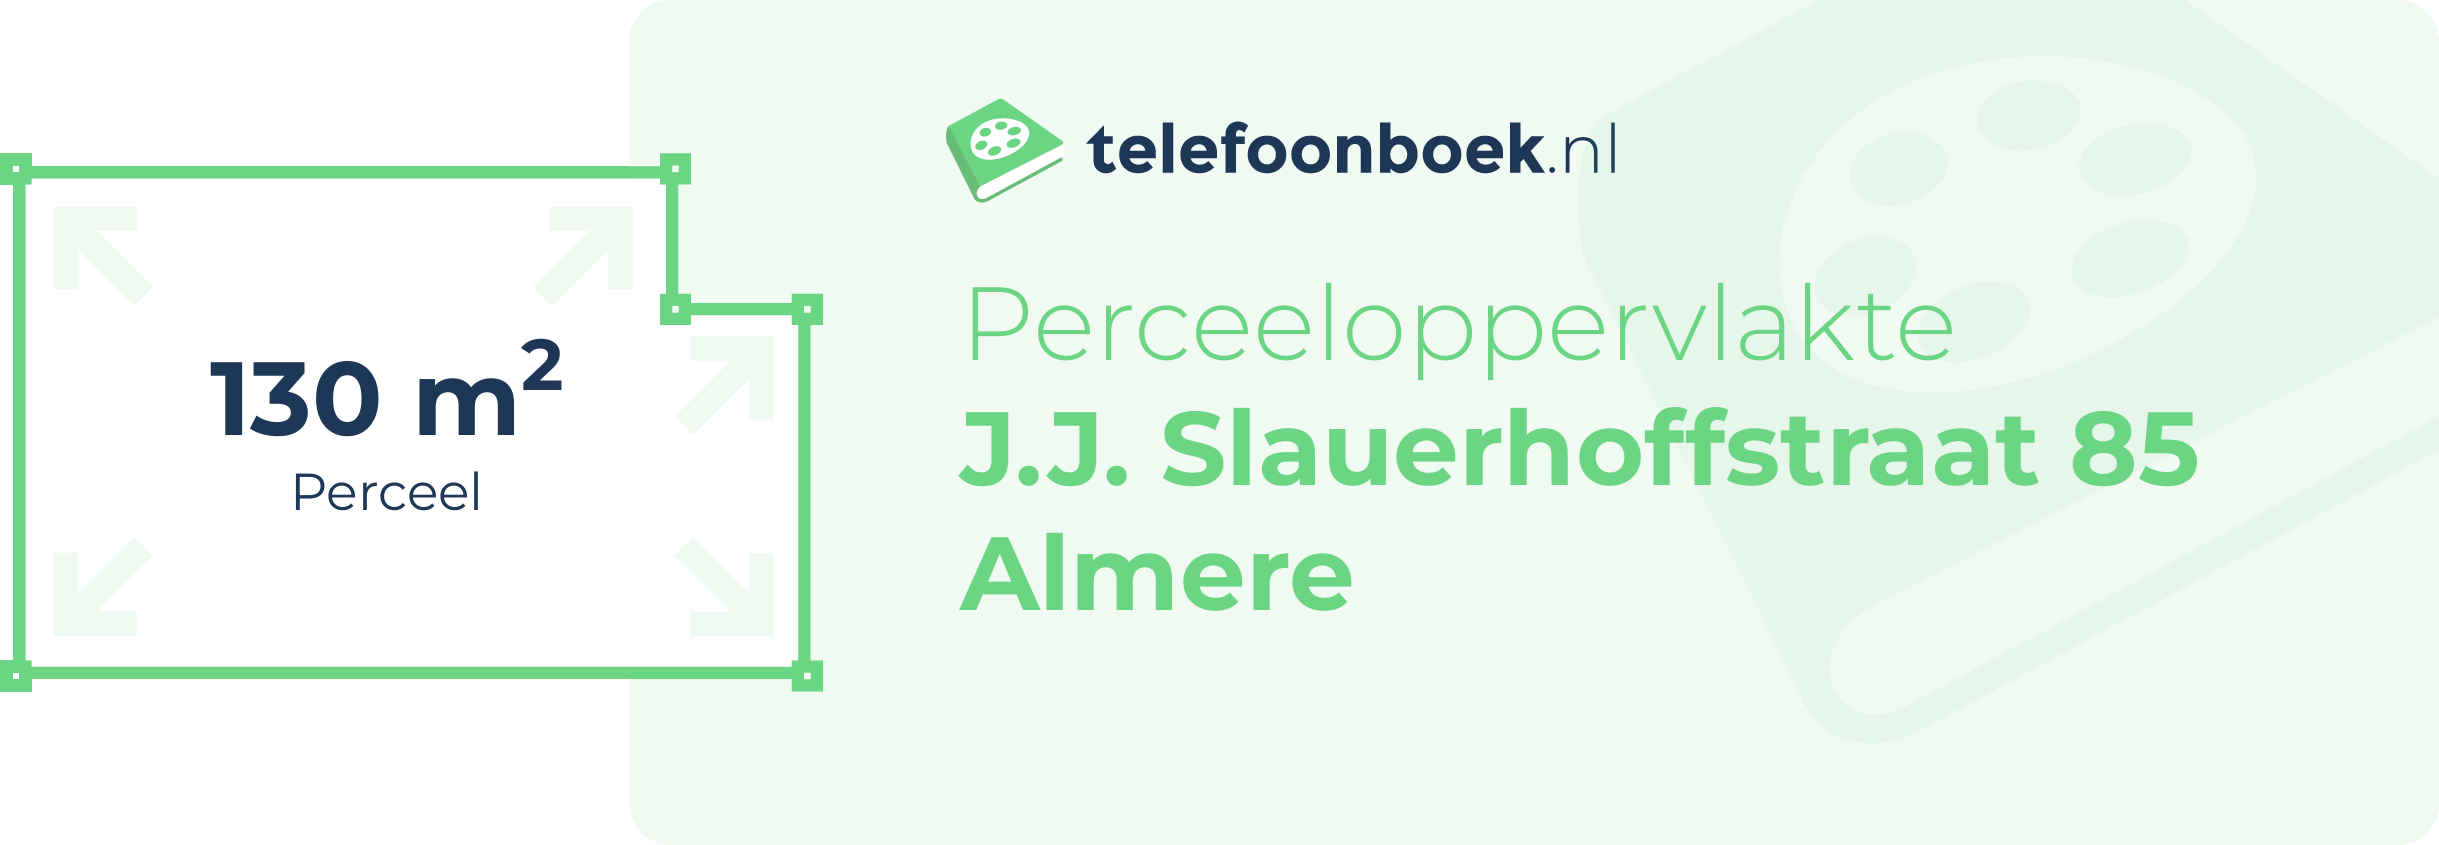 Perceeloppervlakte J.J. Slauerhoffstraat 85 Almere